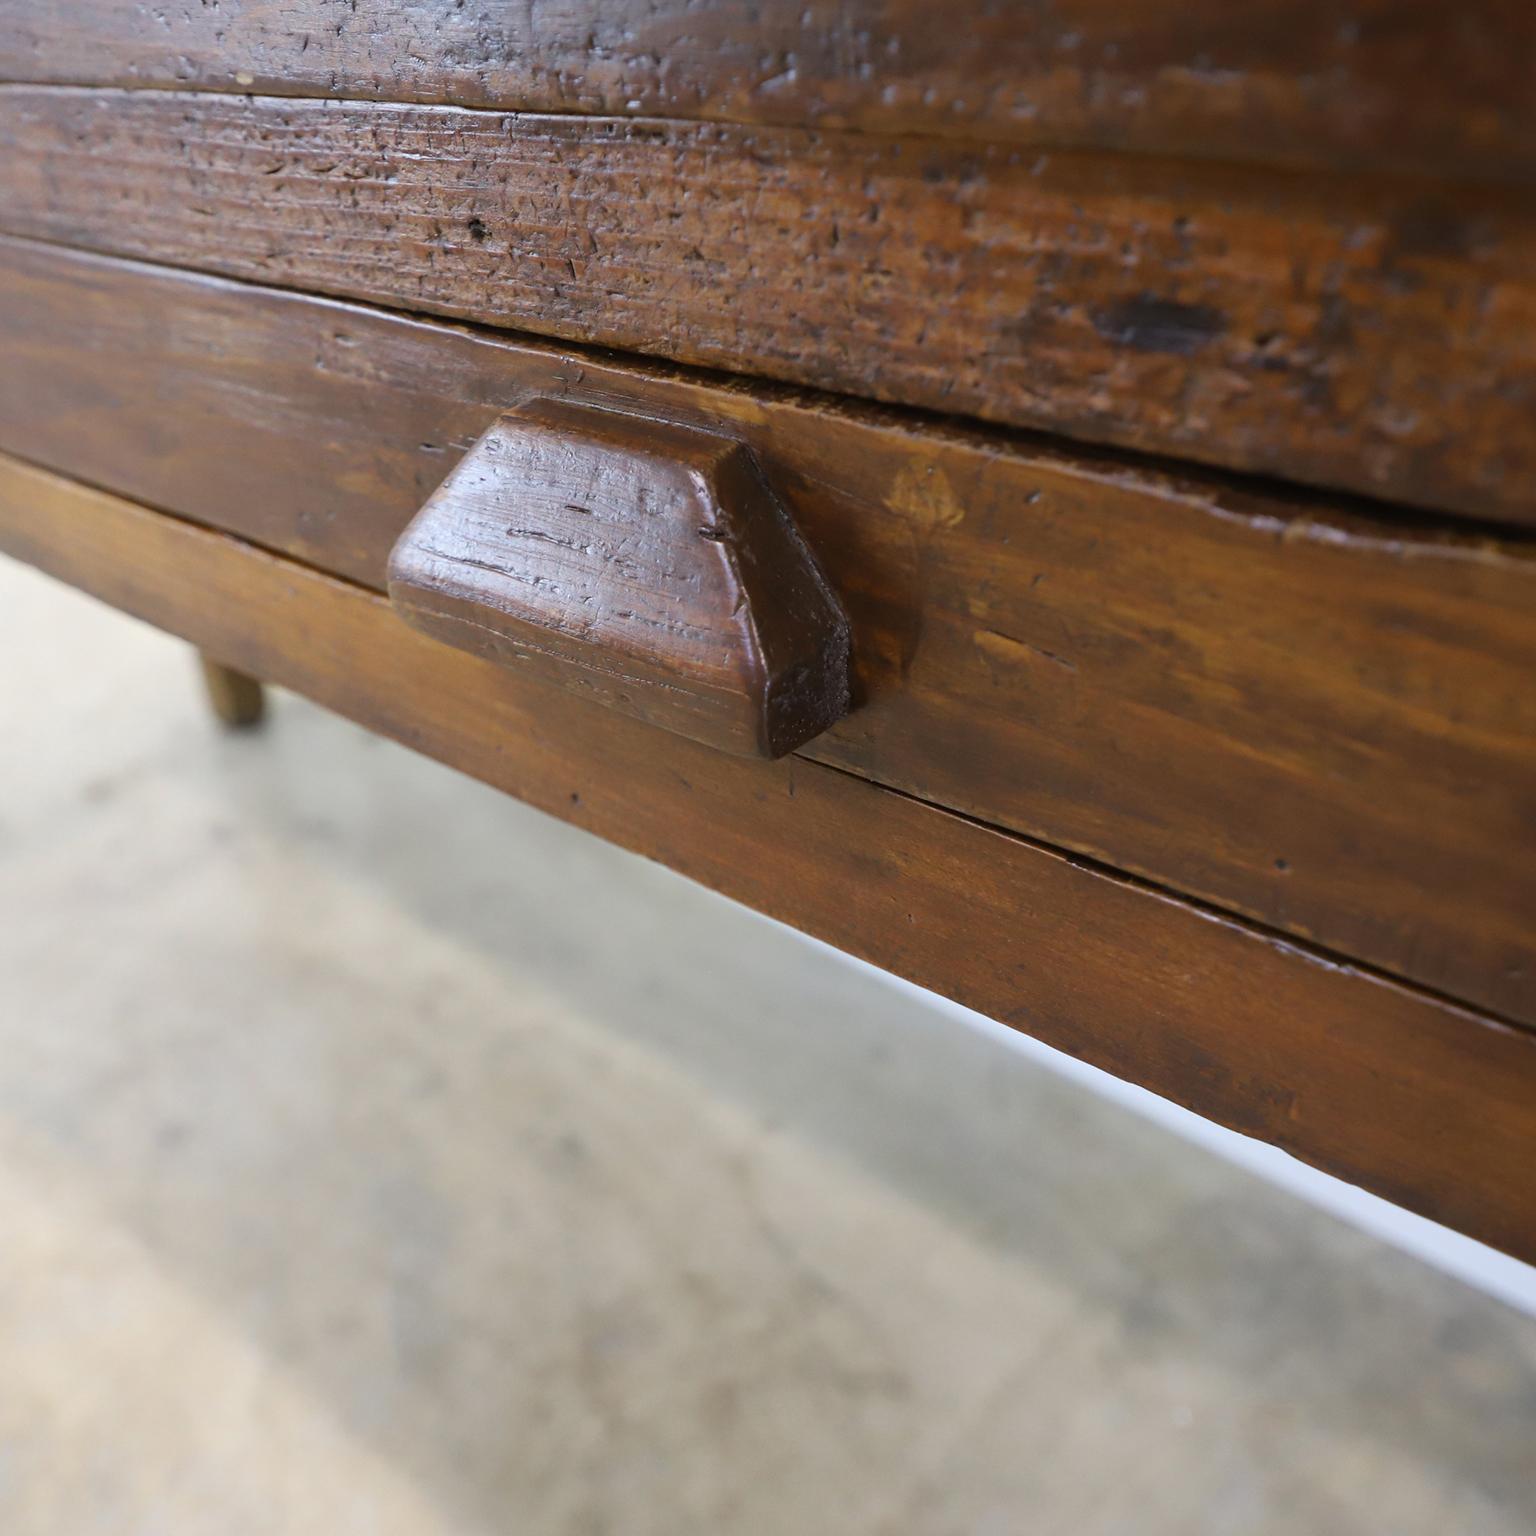 Um 1930. Wir bieten einen einzigartigen antiken mexikanischen industriellen Jewell's Bench Work Table mit hervorragender Patina.

Der Hocker und die Schreibmaschine sind nicht enthalten.